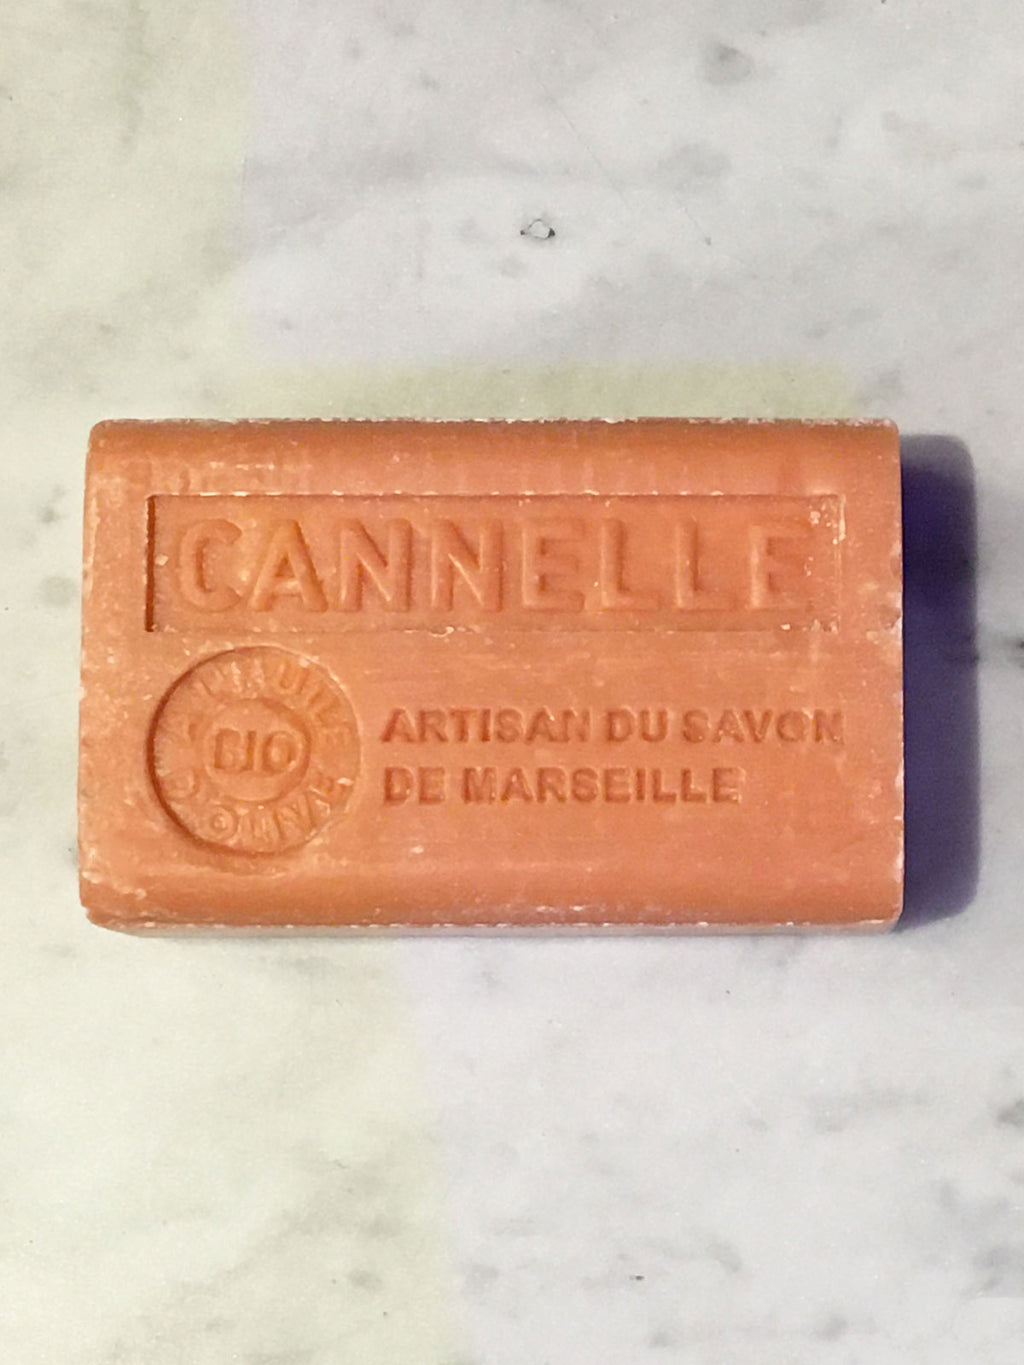 Savon de Marseille French Soap Cannelle